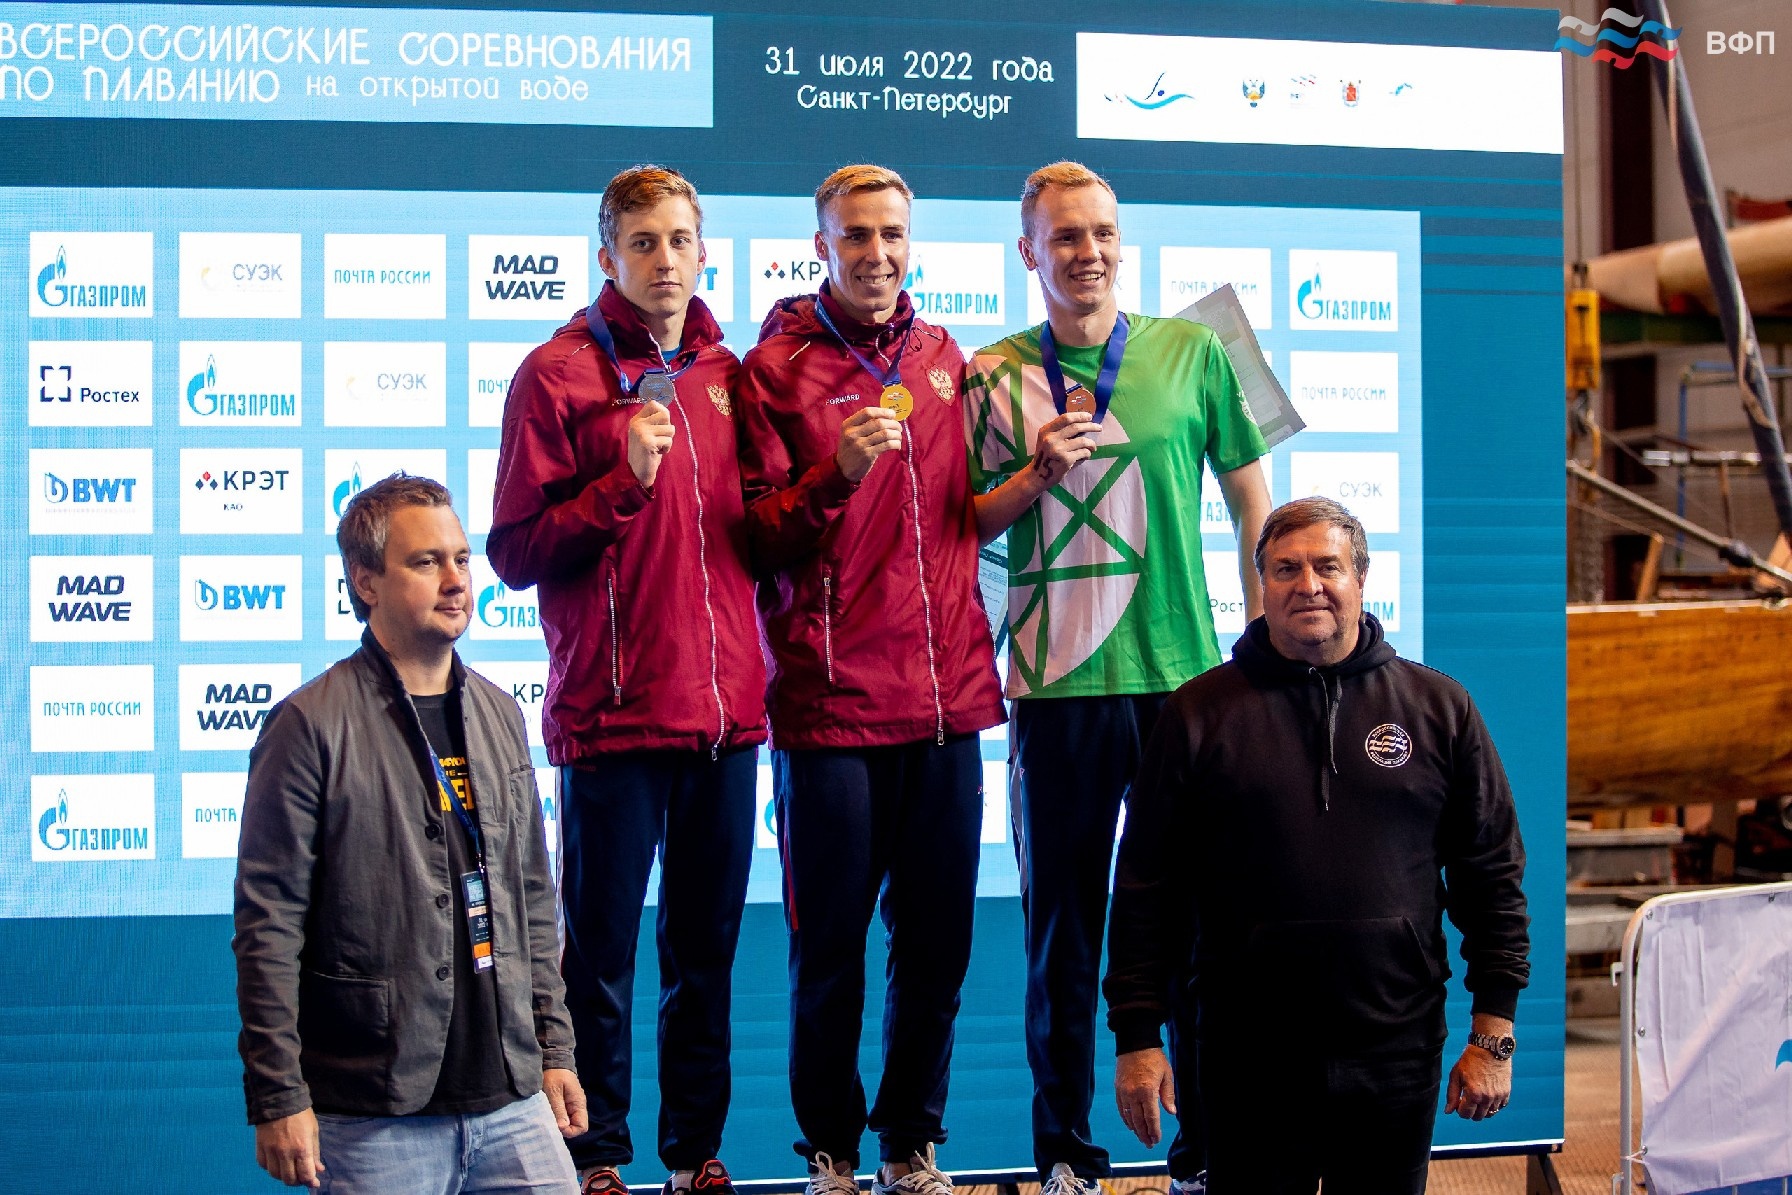 Ярославец стал победителем Всероссийских соревнований на открытой воде